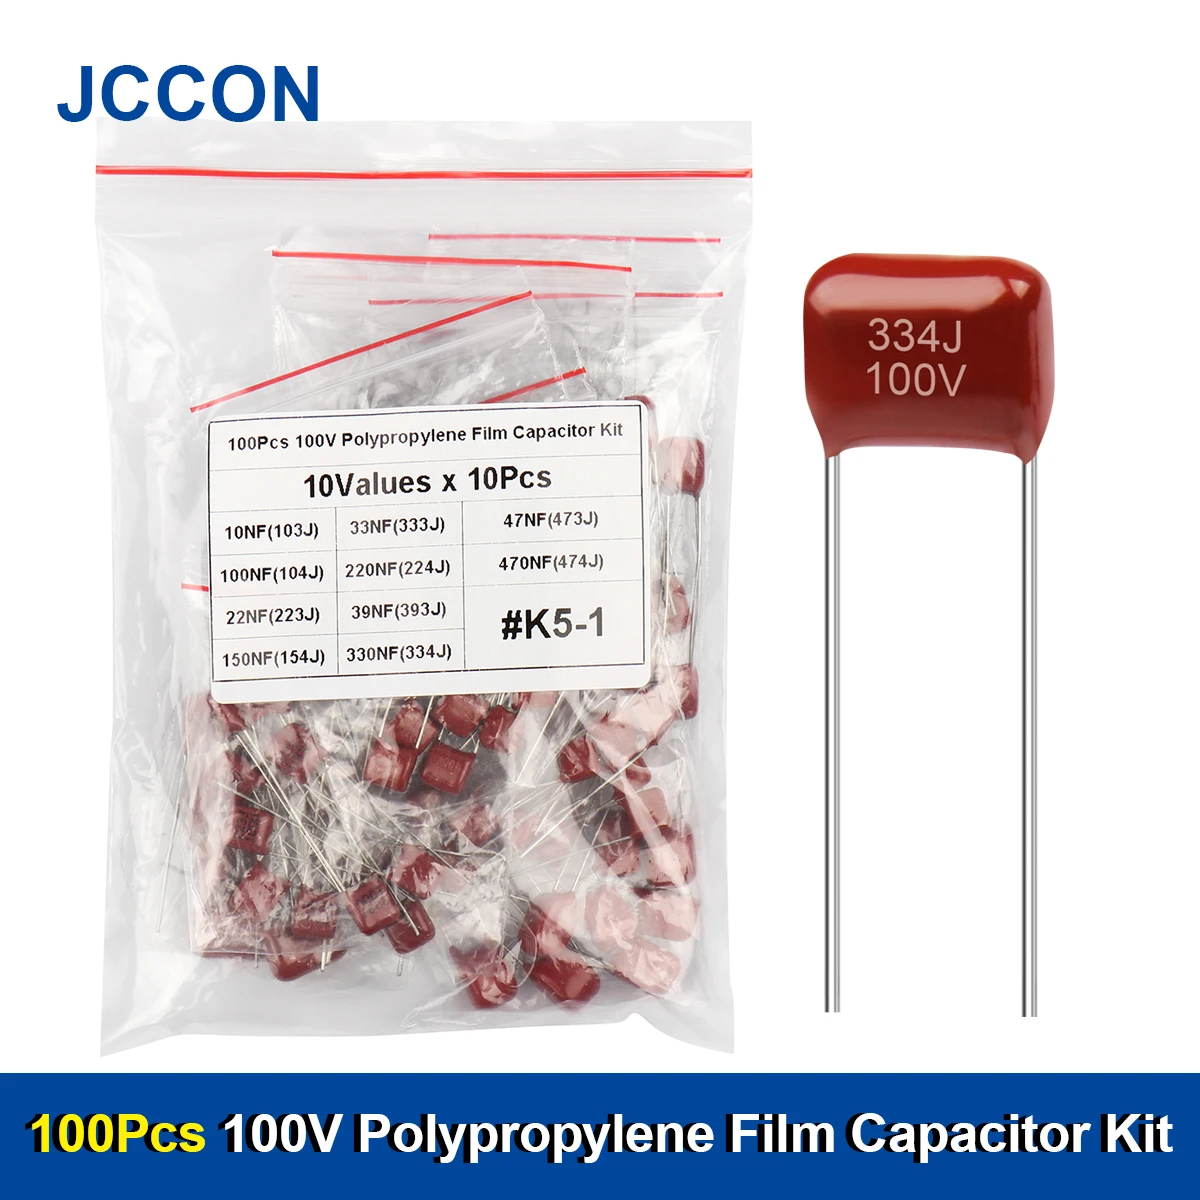 Kit surtido de condensadores de película de polipropileno metalizado, Kit de condensadores JCCON CBB, 100V, 100, 103, 223, 333, 393, 473, 104, 224, 334, 154, 474, 10 valores, piezas